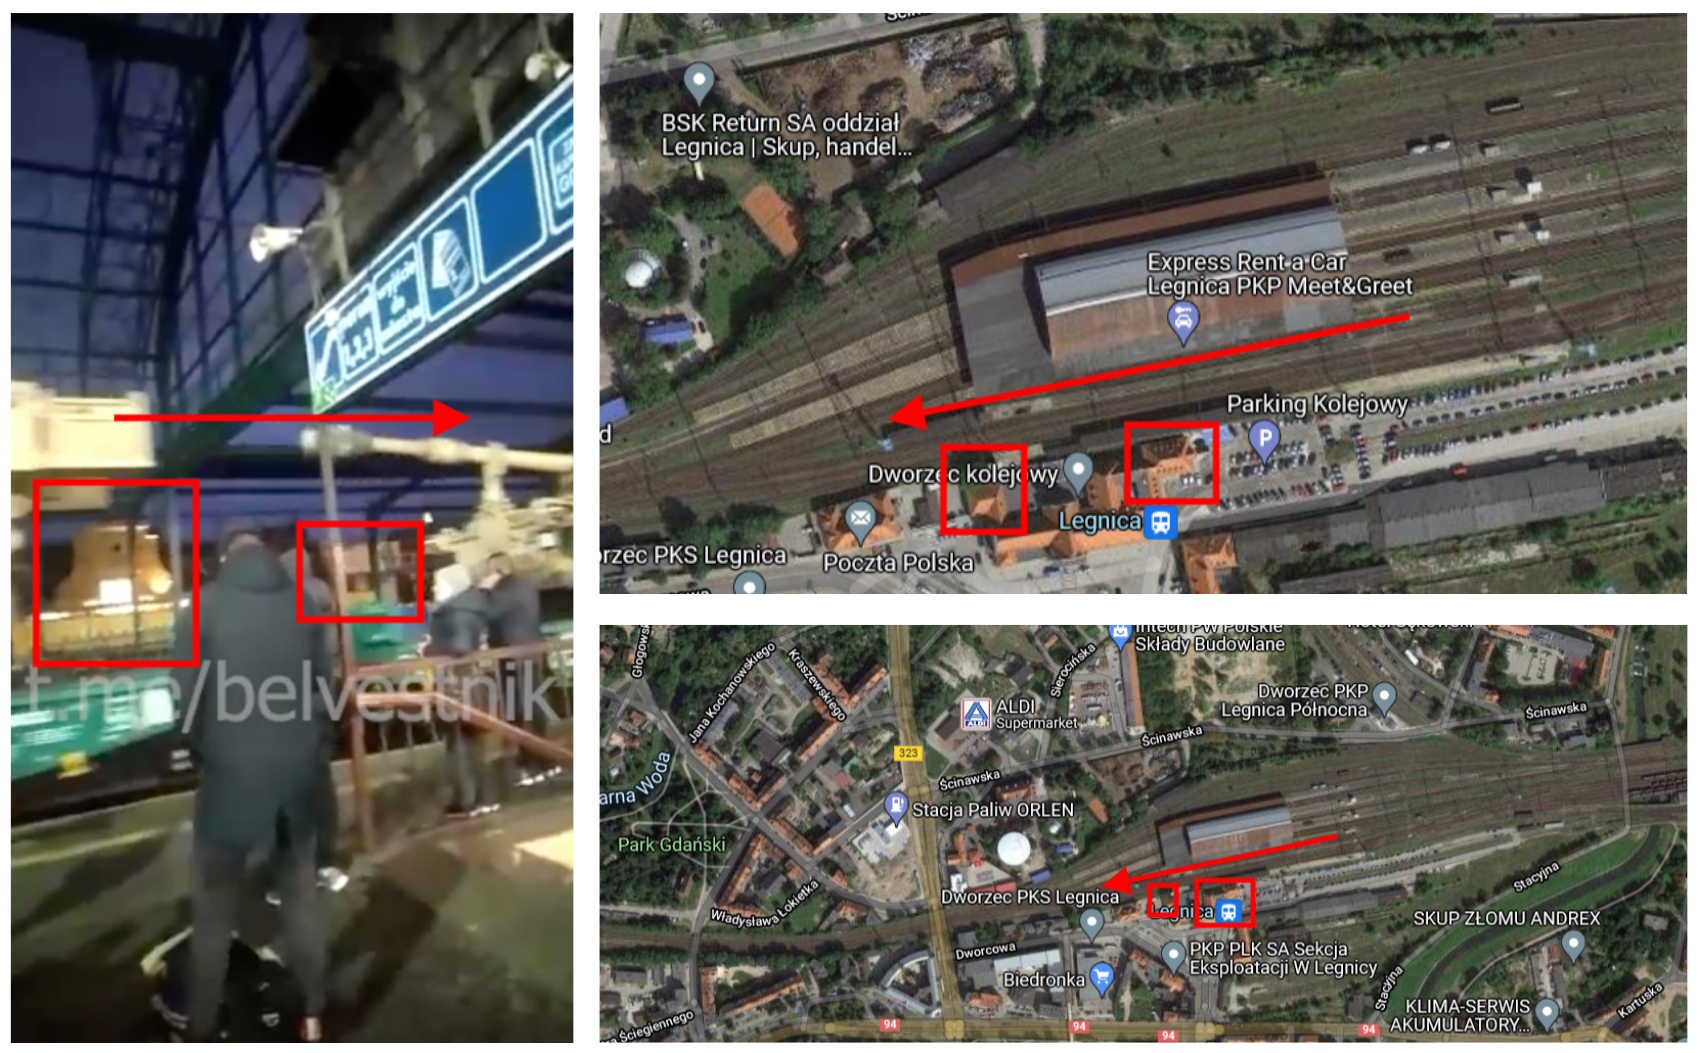 Budynki stacyjne widoczne na nagraniu i na mapach Legnicy oraz kierunek przejazdu transportu